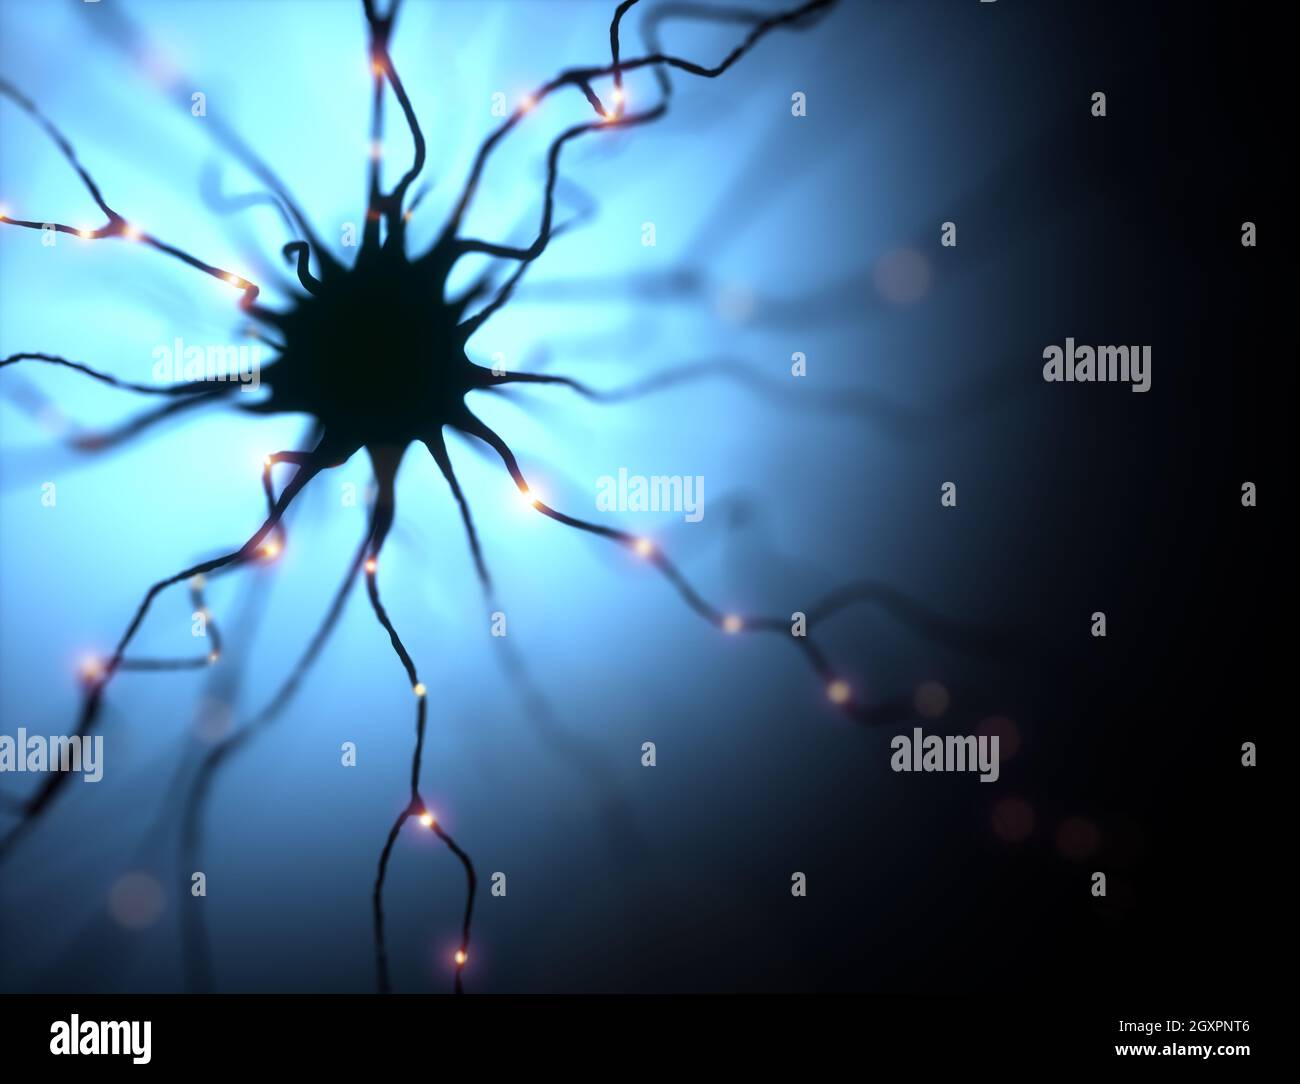 3D-Illustration, Neuronen und ihre Verbindungen. Mikroskopische Fotosimulation des menschlichen Nervensystems. Stockfoto